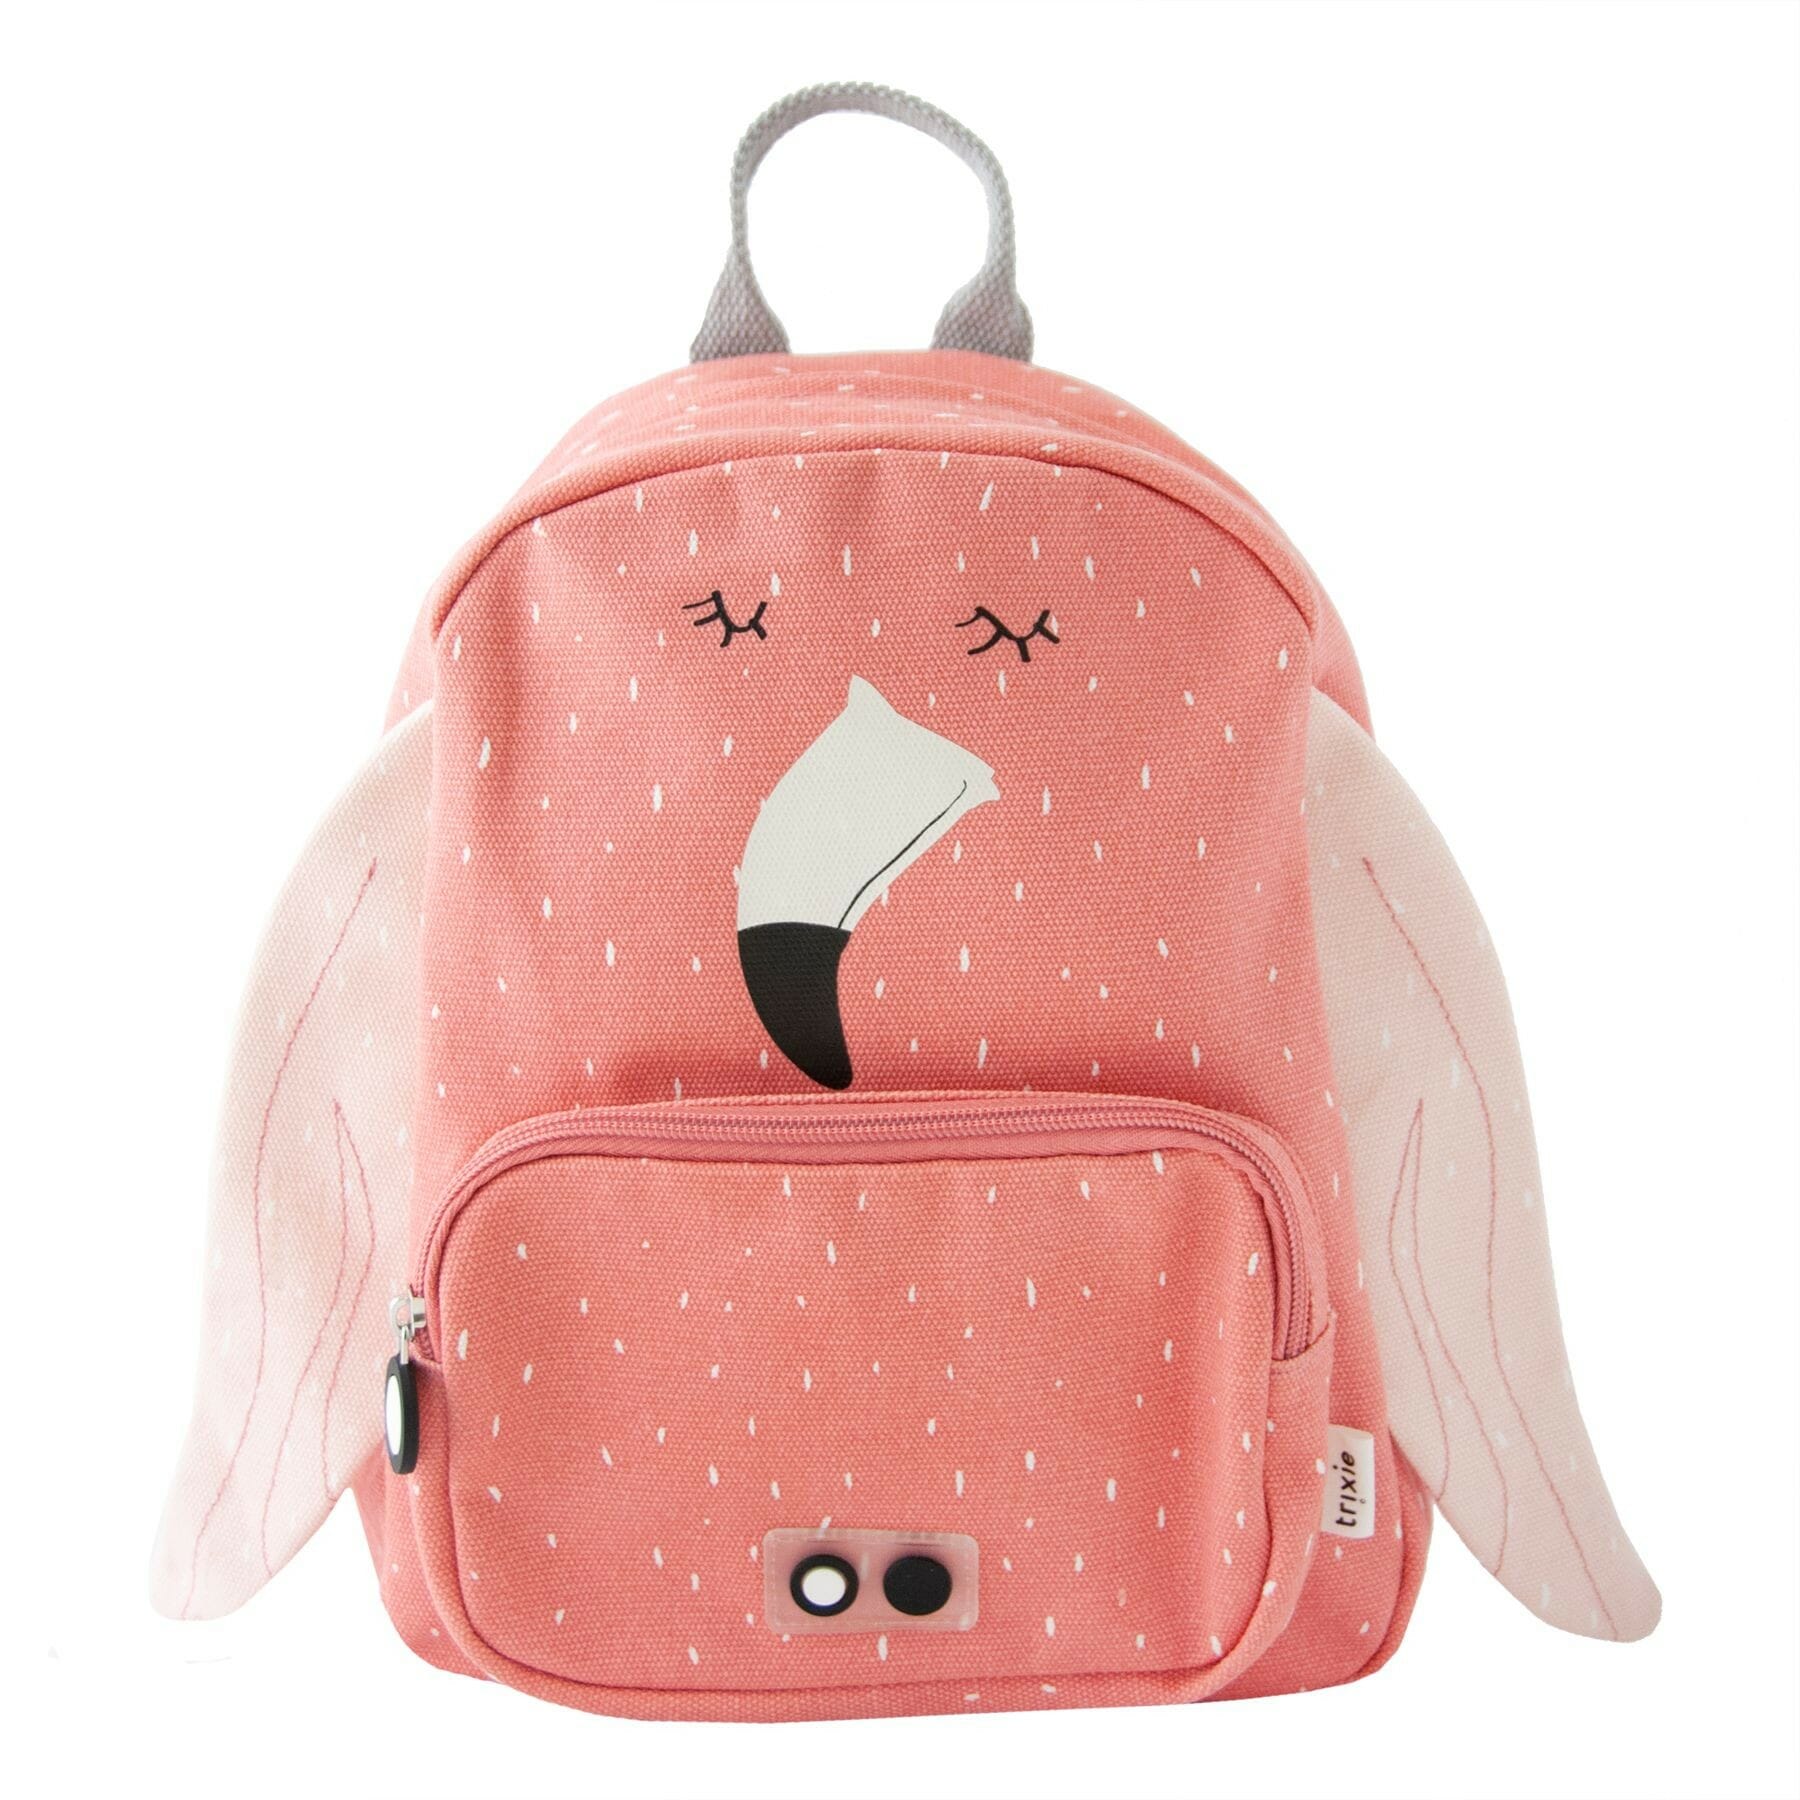 mrs-flamingo-backpack.jpg